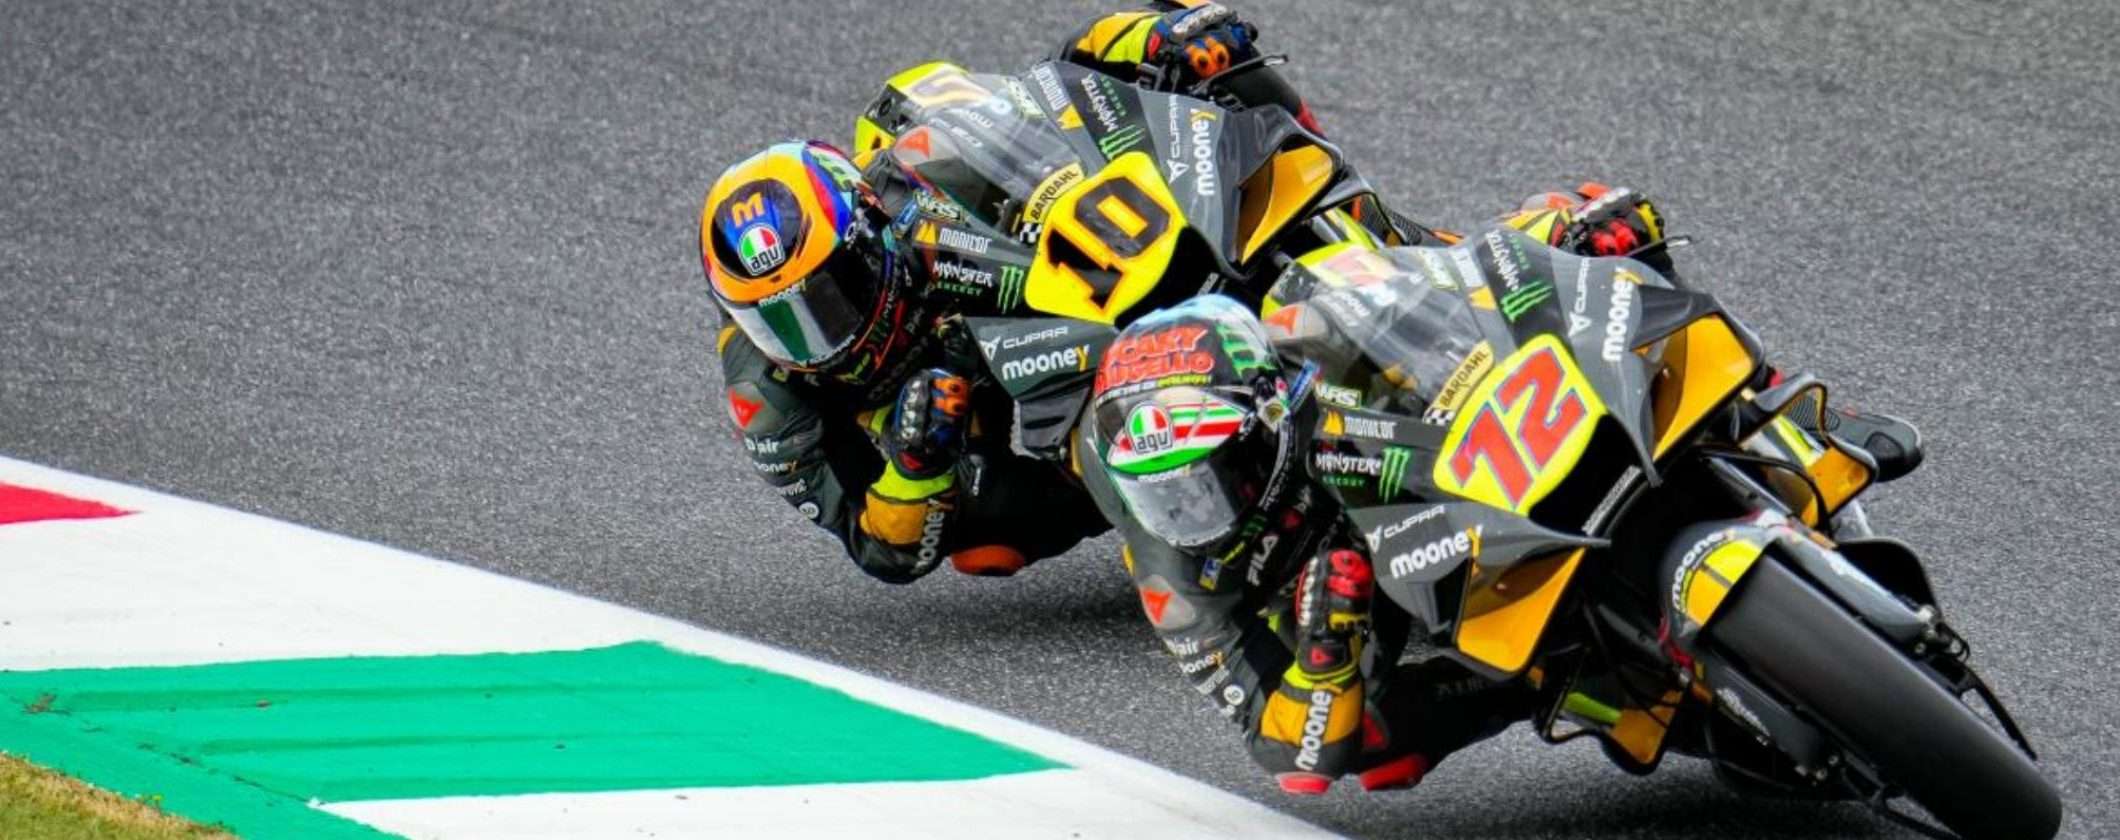 MotoGP Spagna: calendario e streaming delle gare a Barcellona